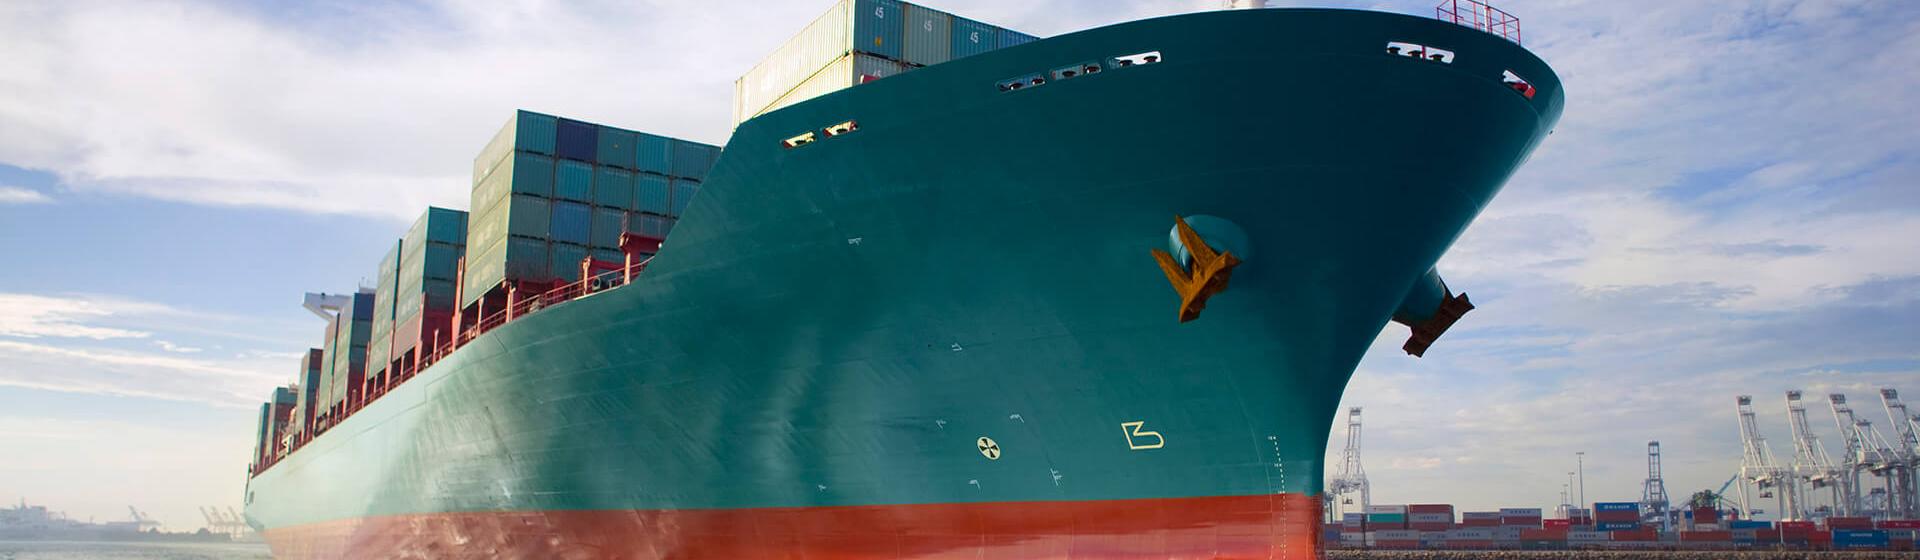 एक कार्गो कंटेनर जहाज़ हार्बर बंदरगाह से गुज़र रहा है, इसके बैकग्राउंड में क्रेन हैं, जो कि समुद्र के पानी की सतह पर भी दिख रहे हैं.